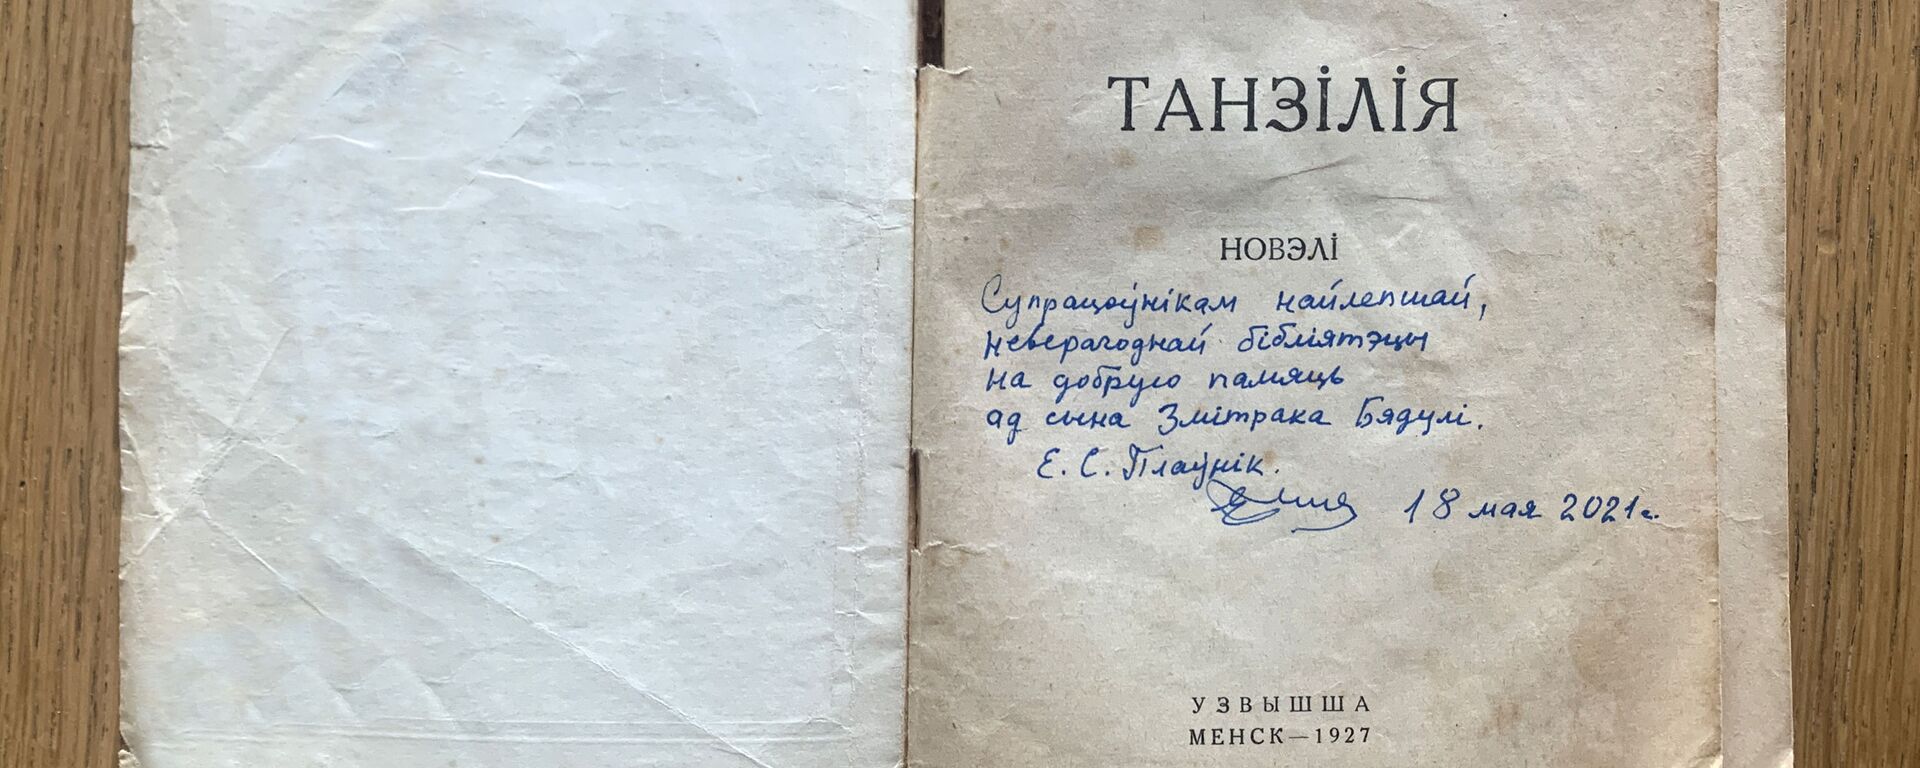 Танзілія з аўтографам - Sputnik Беларусь, 1920, 09.06.2021